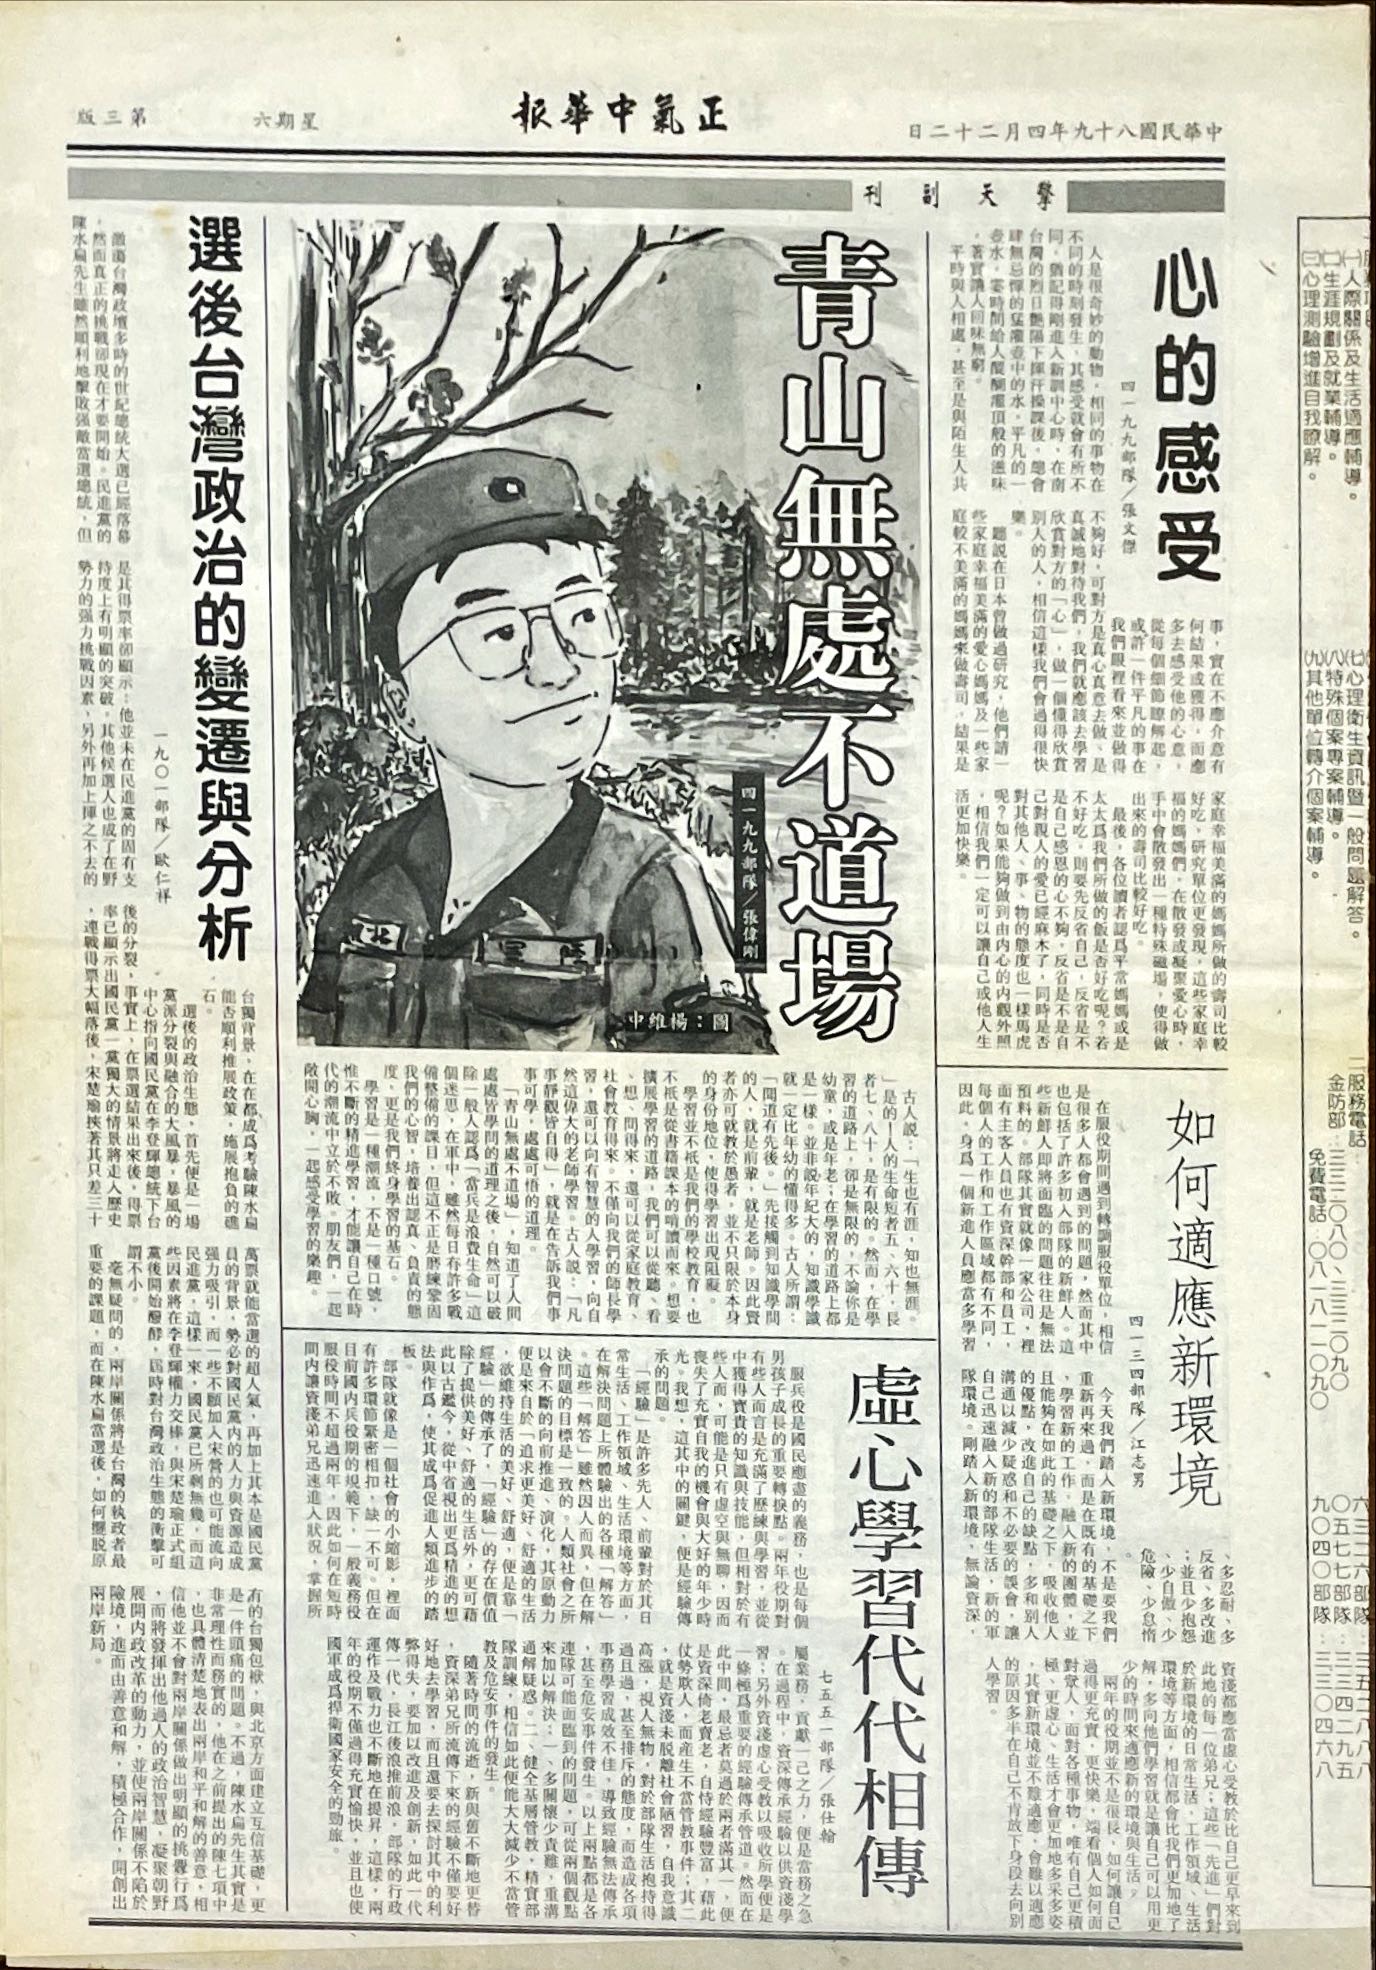 民國八十九年四月二十二日正氣中華報擎天副刊